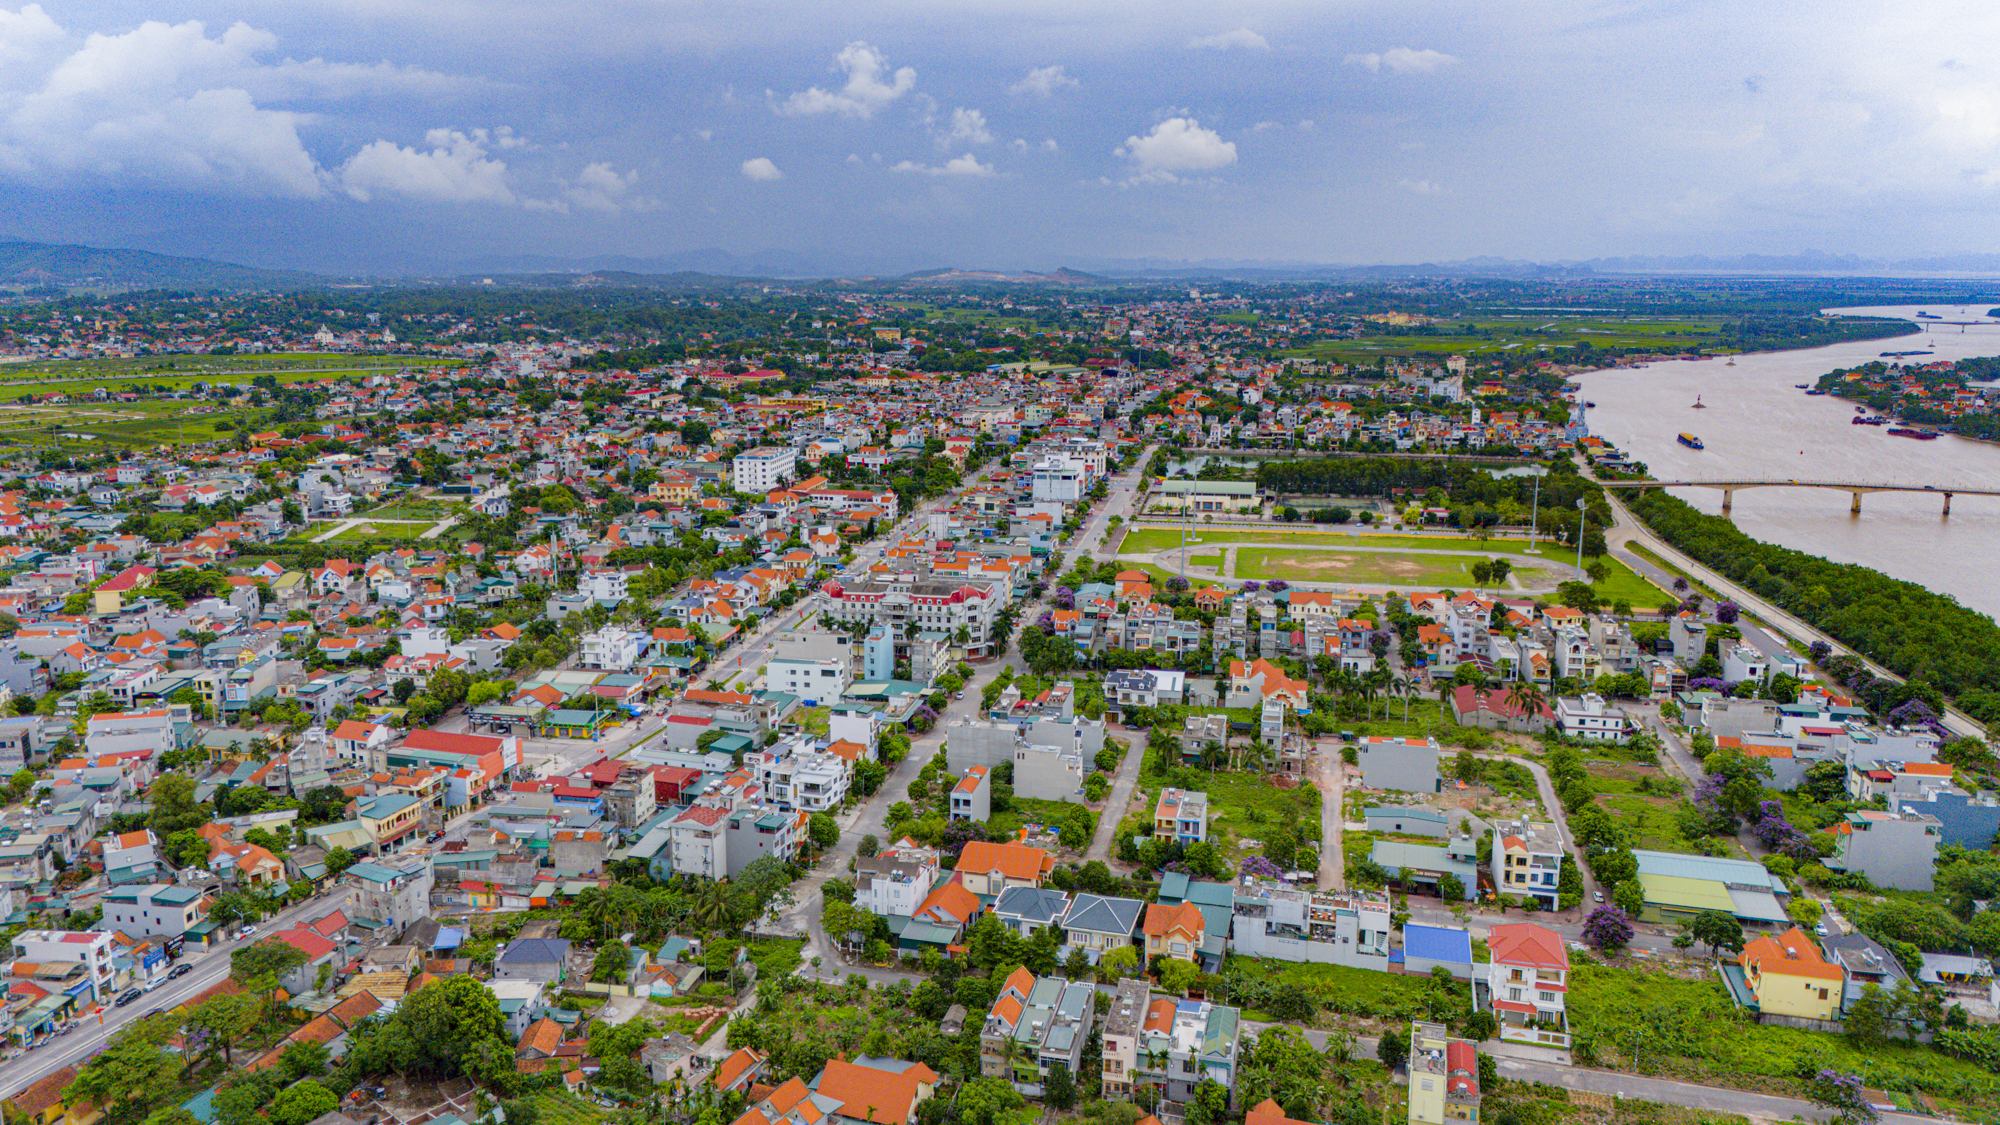 Thị xã là hạt nhân tăng trưởng mới của Quảng Ninh, được đầu tư chỉ sau Hạ Long, có khu kinh tế thu hút tỷ USD, sắp lên thành phố- Ảnh 2.